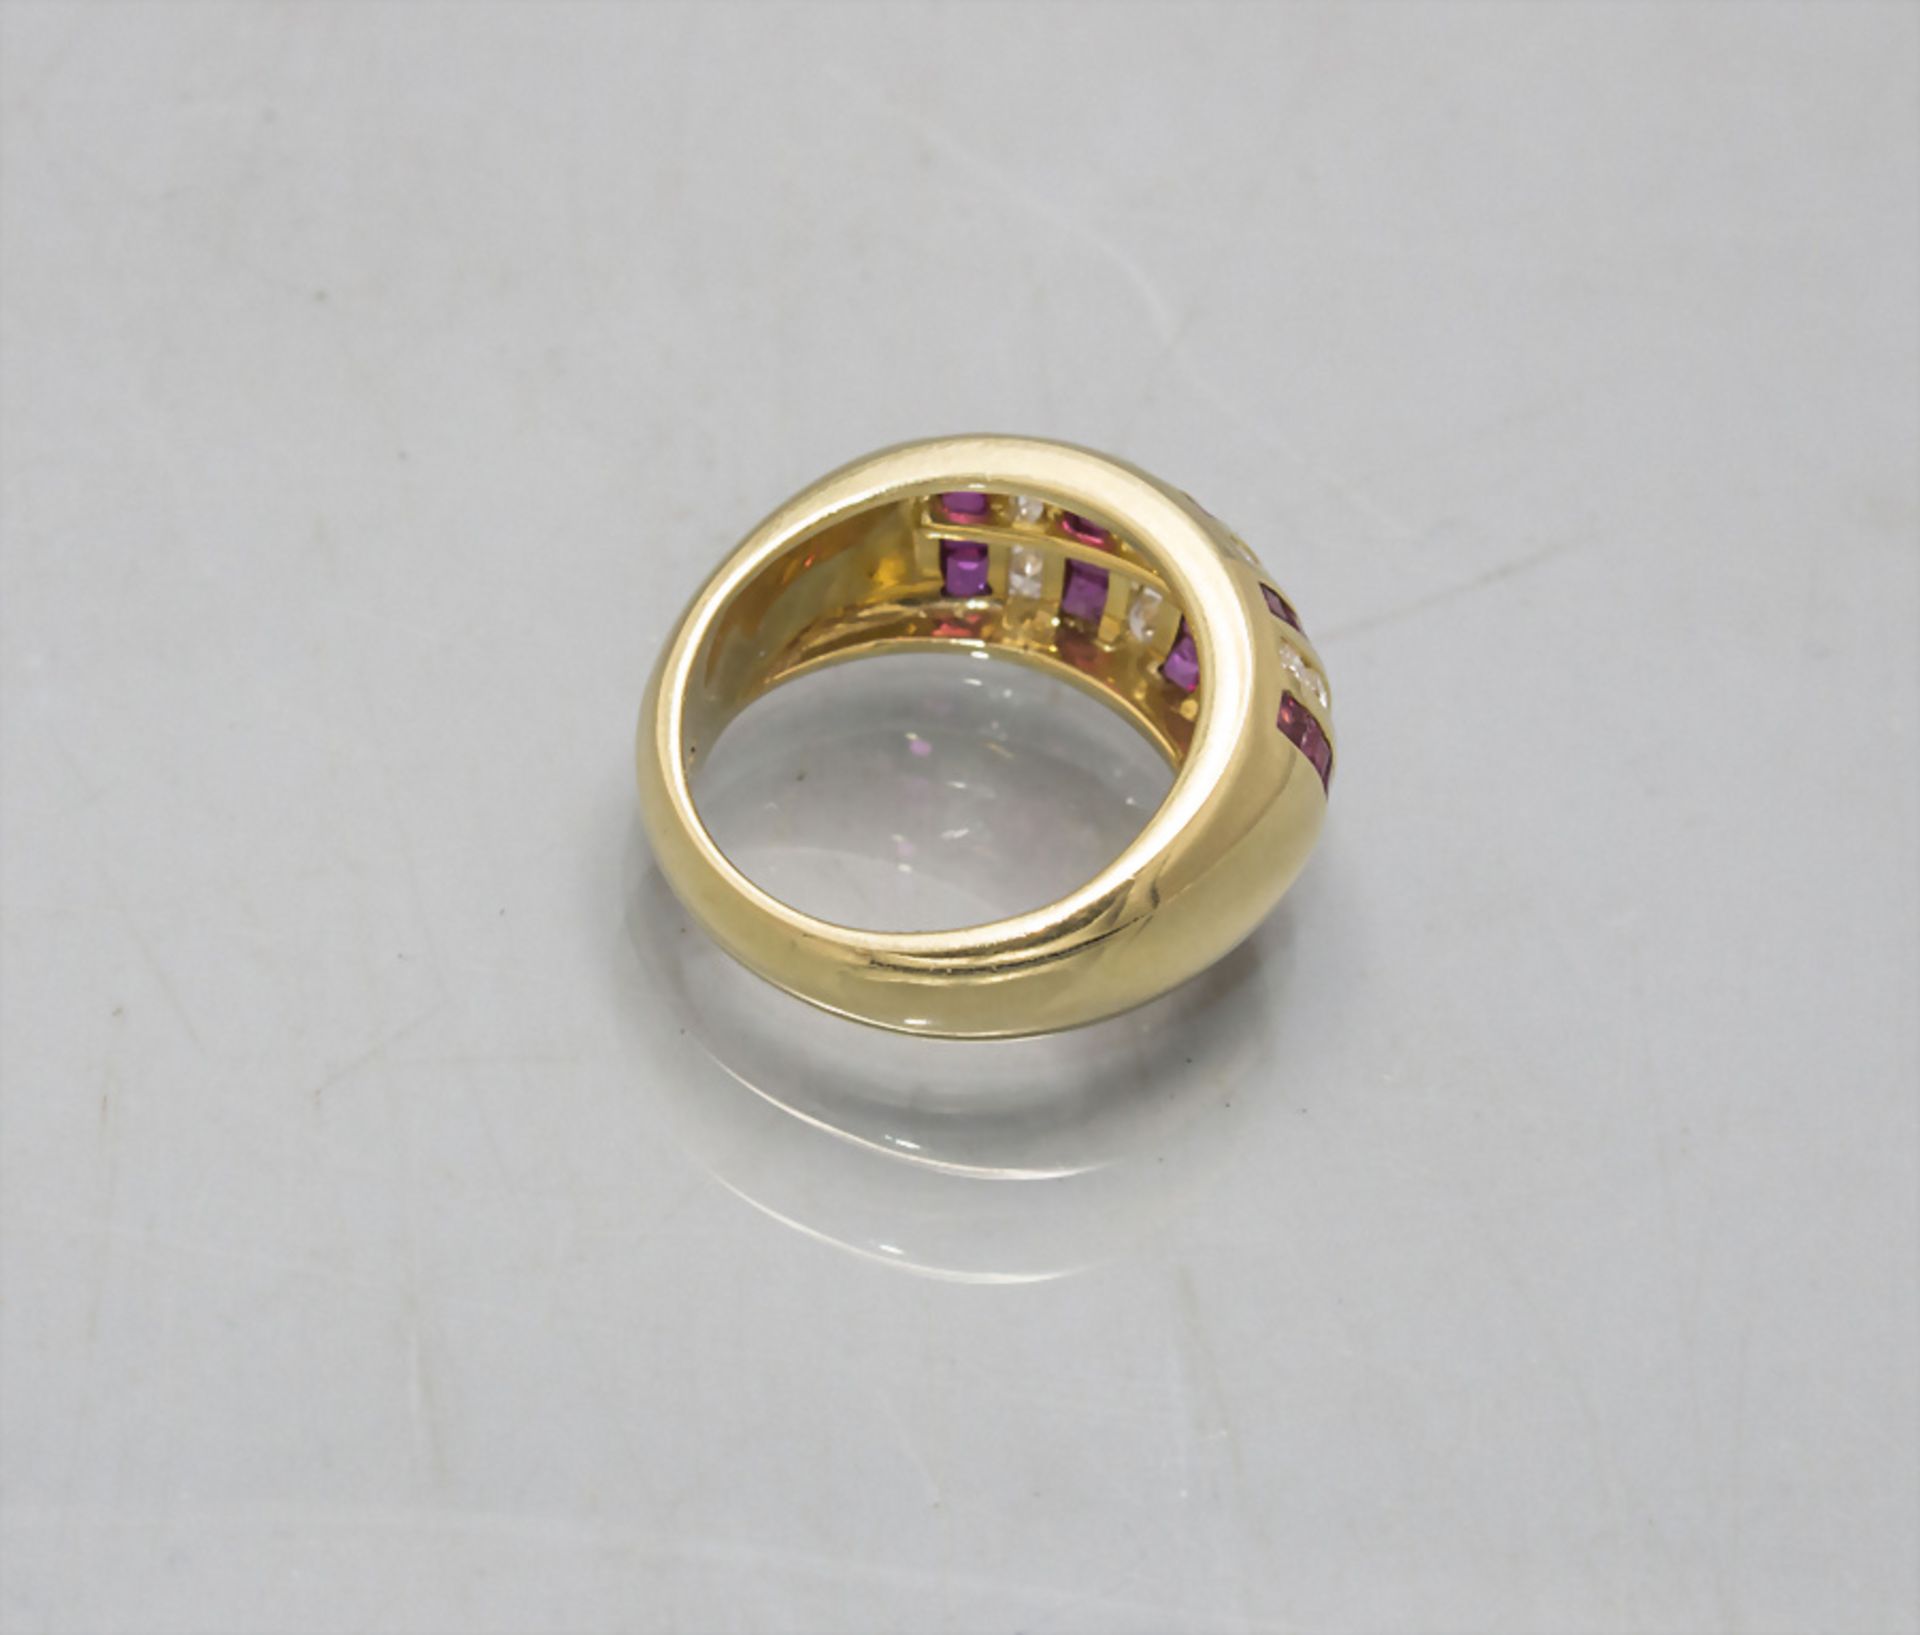 Damenring mit Diamanten und Rubinen / An 18 ct ladies gold ring with diamonds and rubies - Bild 3 aus 3